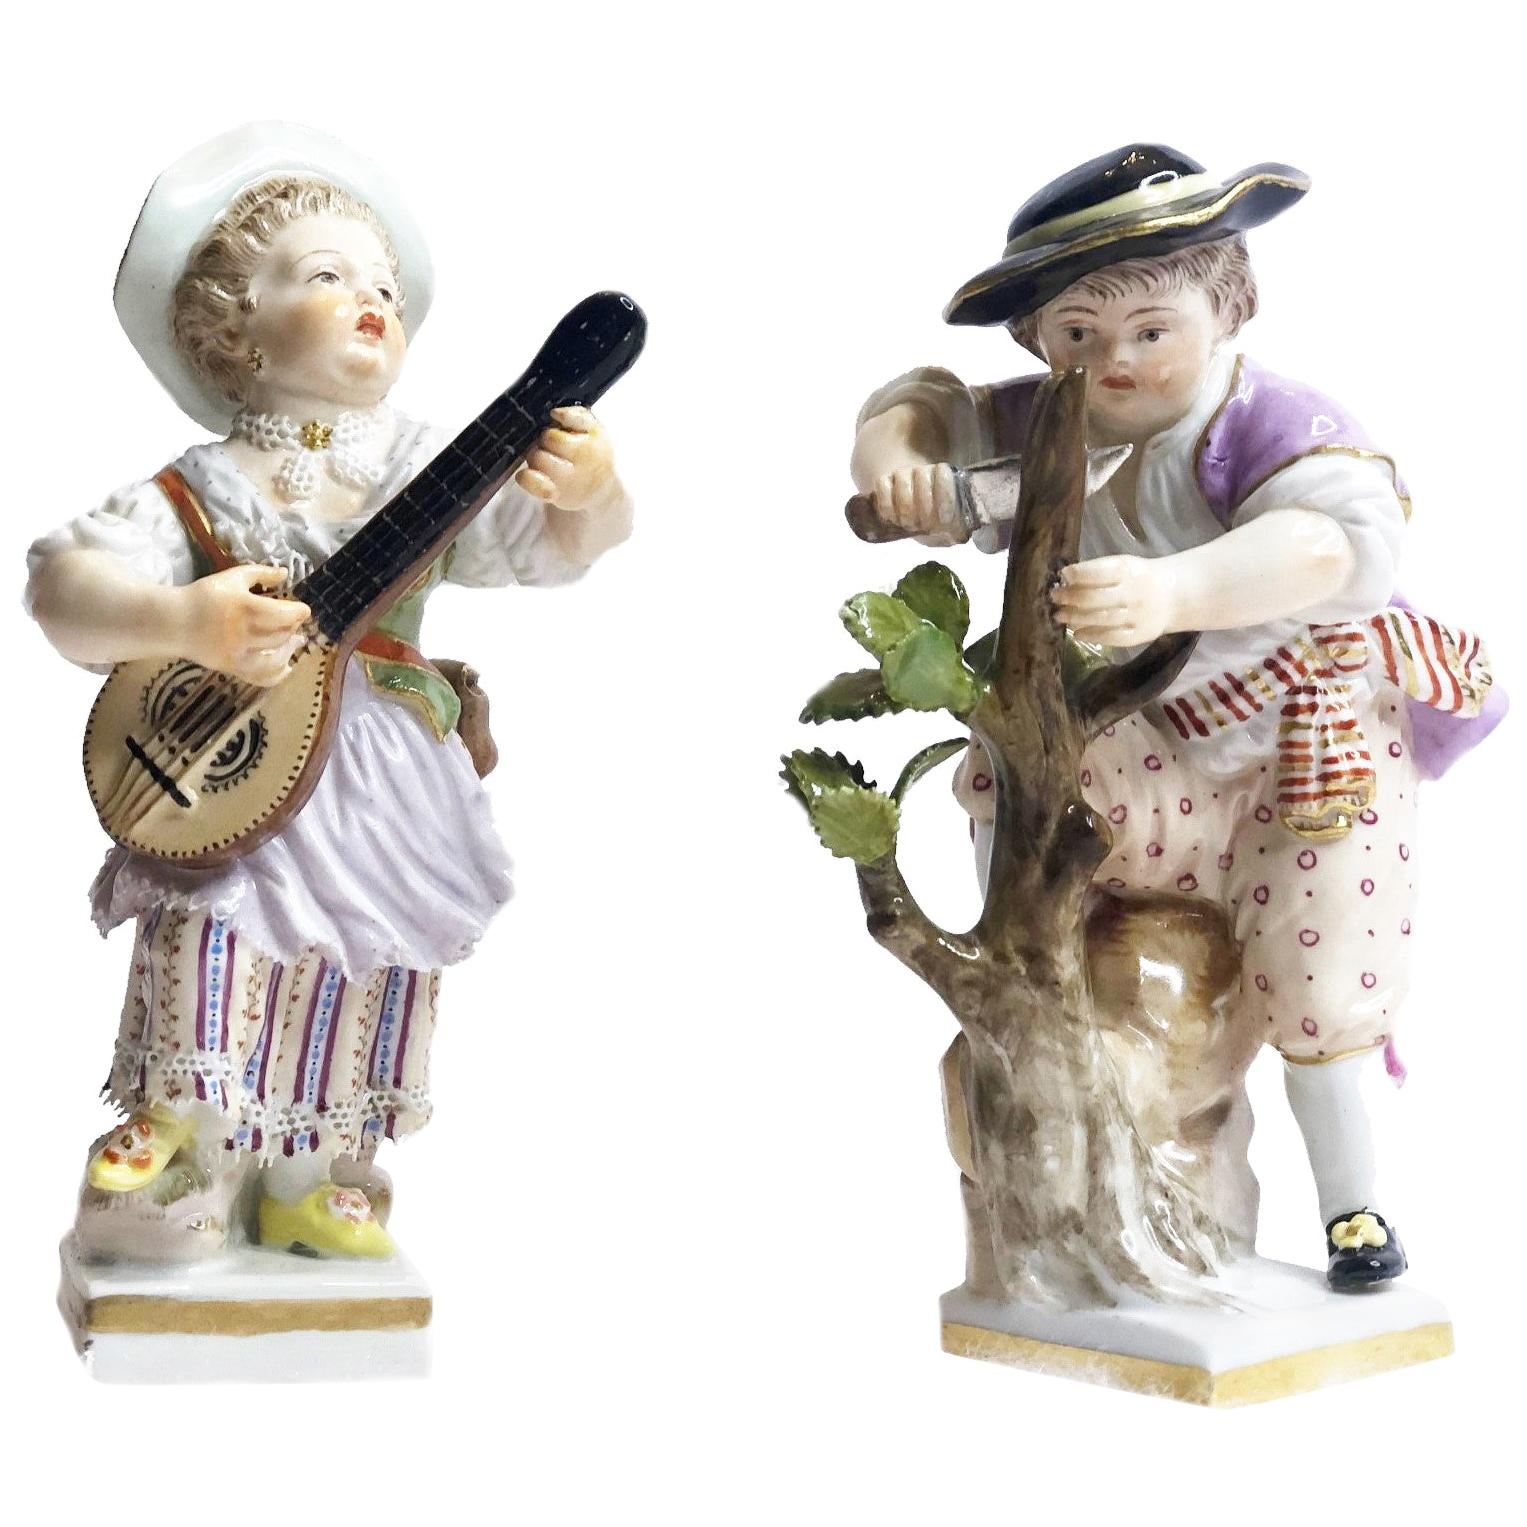 Porcelaine de Meissen, paire de figurines de joueur de mandoline et de bûcheron, vers 1860